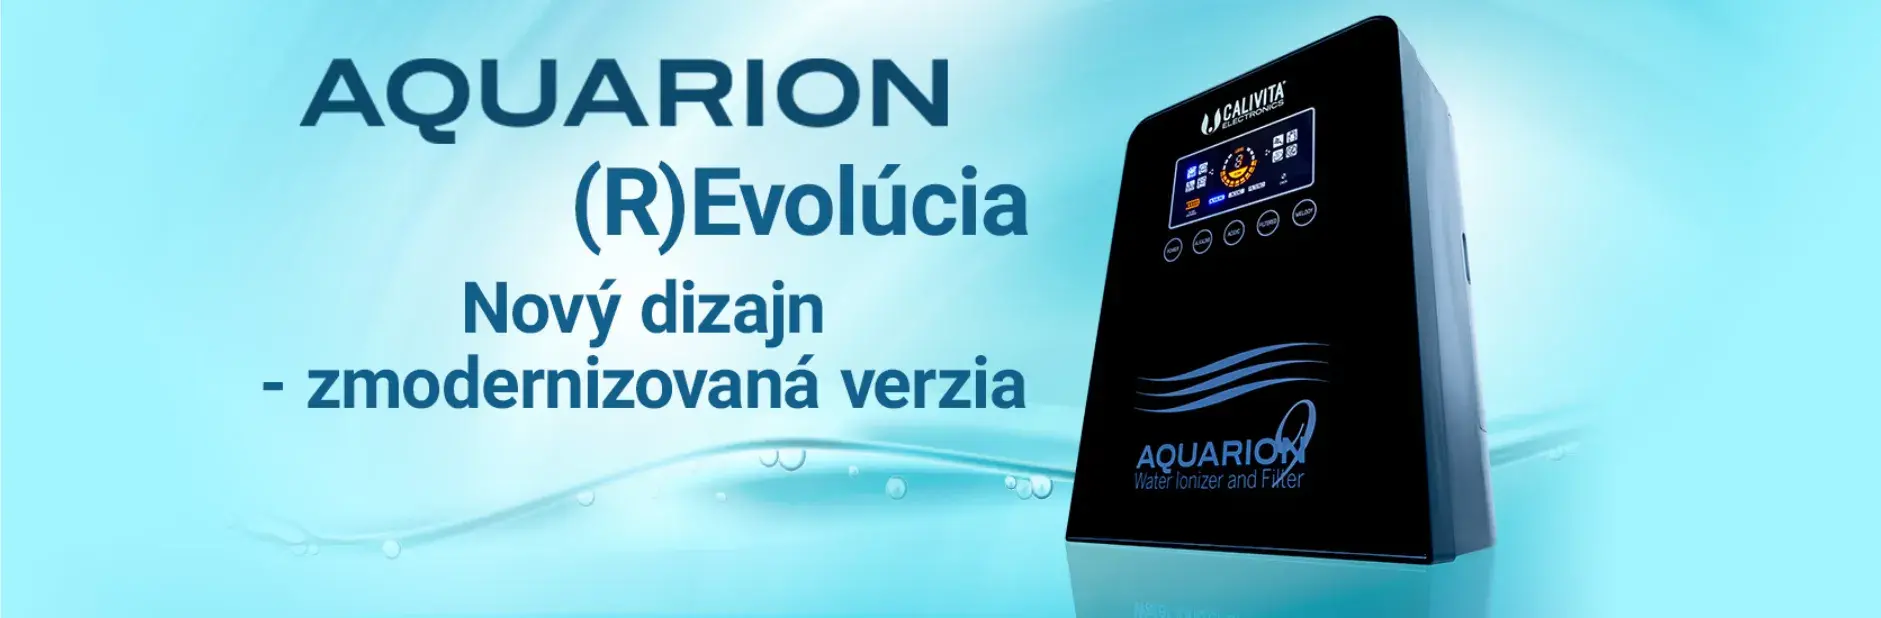 Aquarion 9P